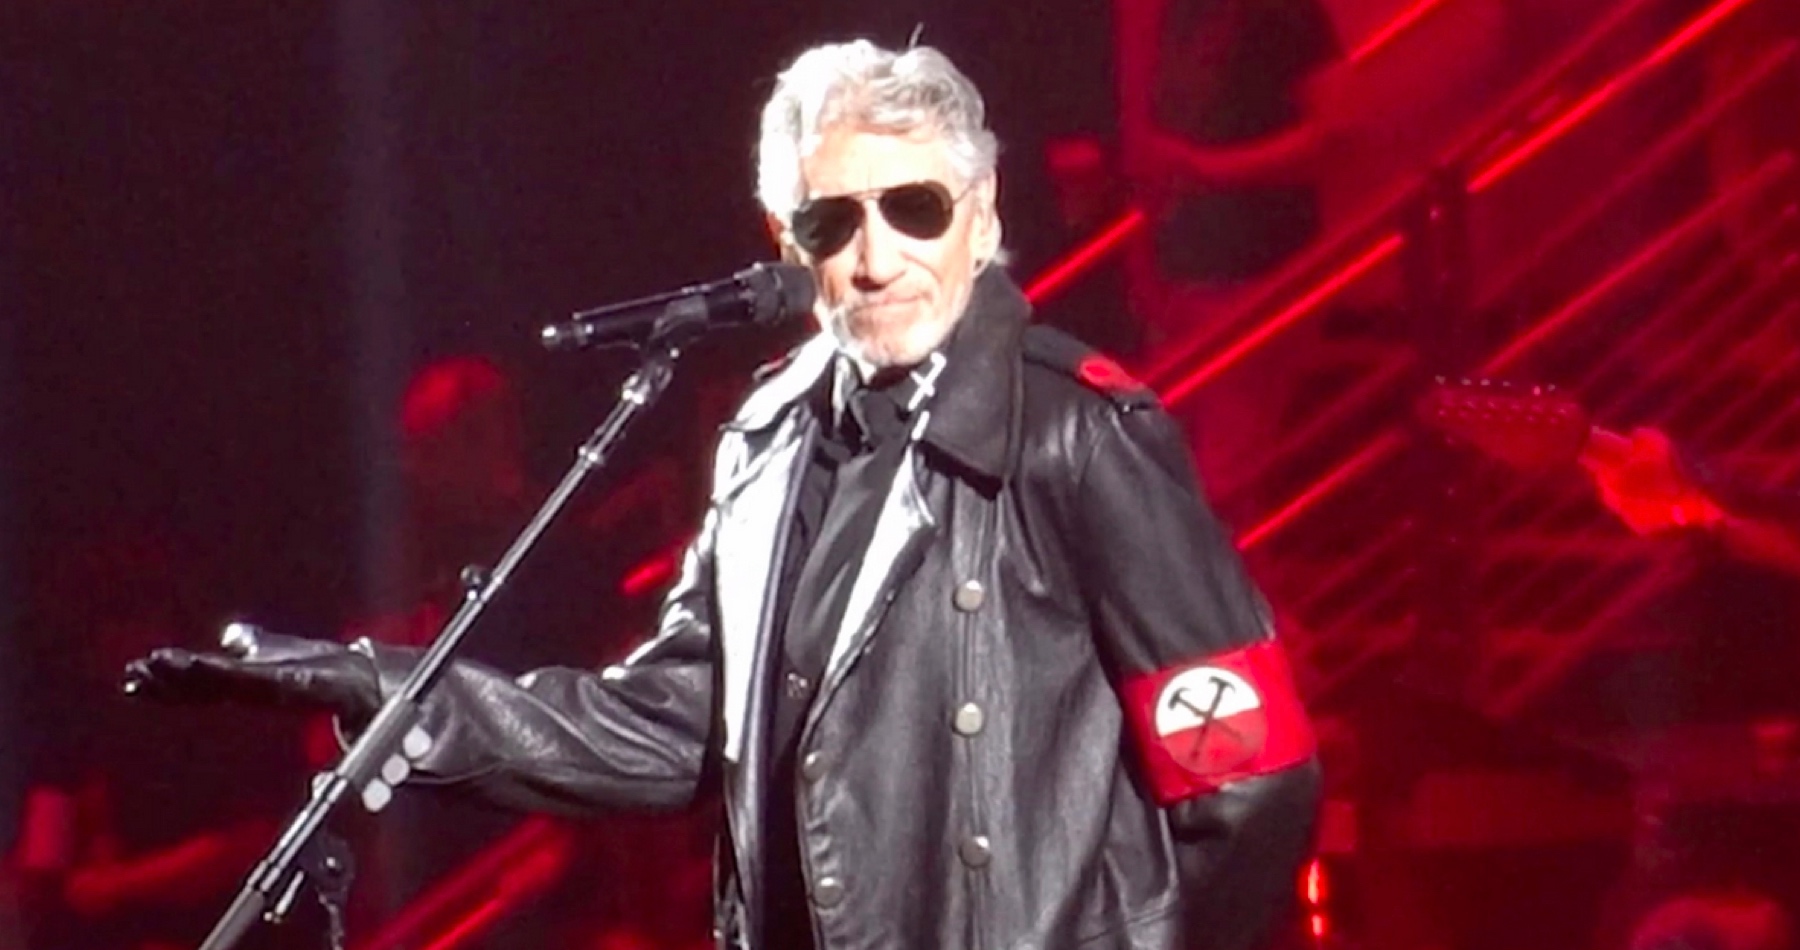 Spoluzakladateľ Pink Floydu Waters vystúpil v kostýme pripomínajúcom uniformu príslušníkov nacistickej SS, aby poukázal na historickú paralelu fašistického režimu so súčasnosťou. Nemecká polícia ho vyšetruje kvôli podozreniu zo šírenia nenávisti